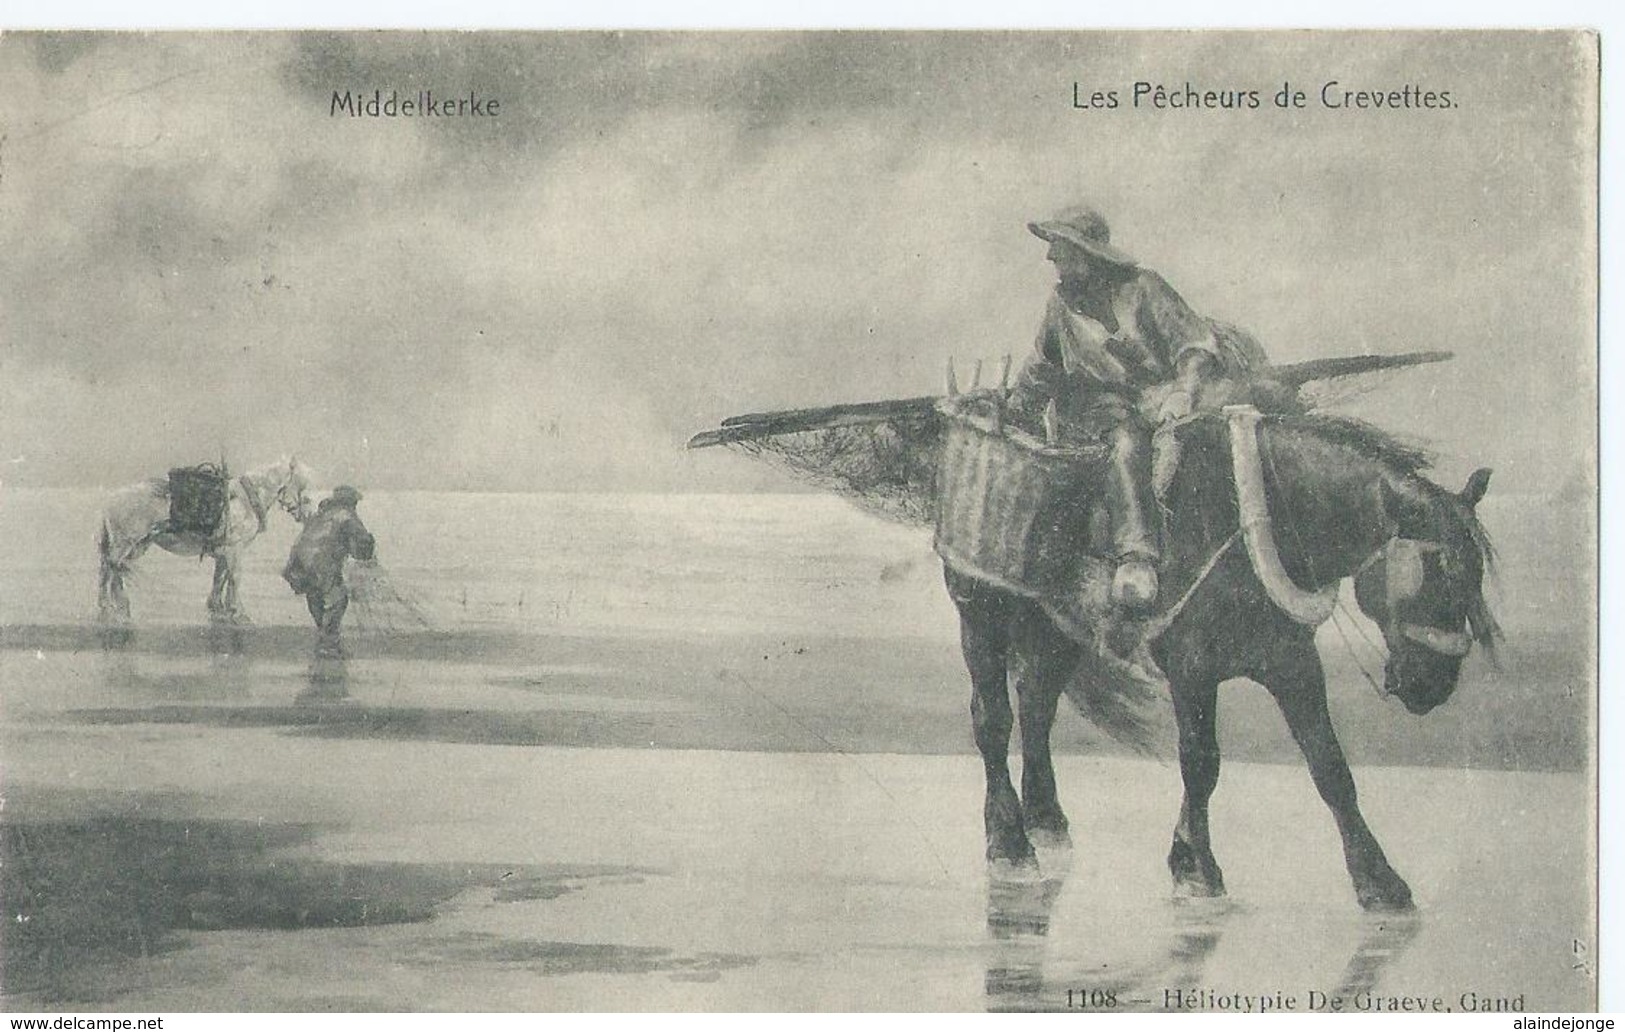 Middelkerke - Les Pêcheurs De Crevettes - Star 1108 - Héliotypie De Graeve - 1910 - Middelkerke